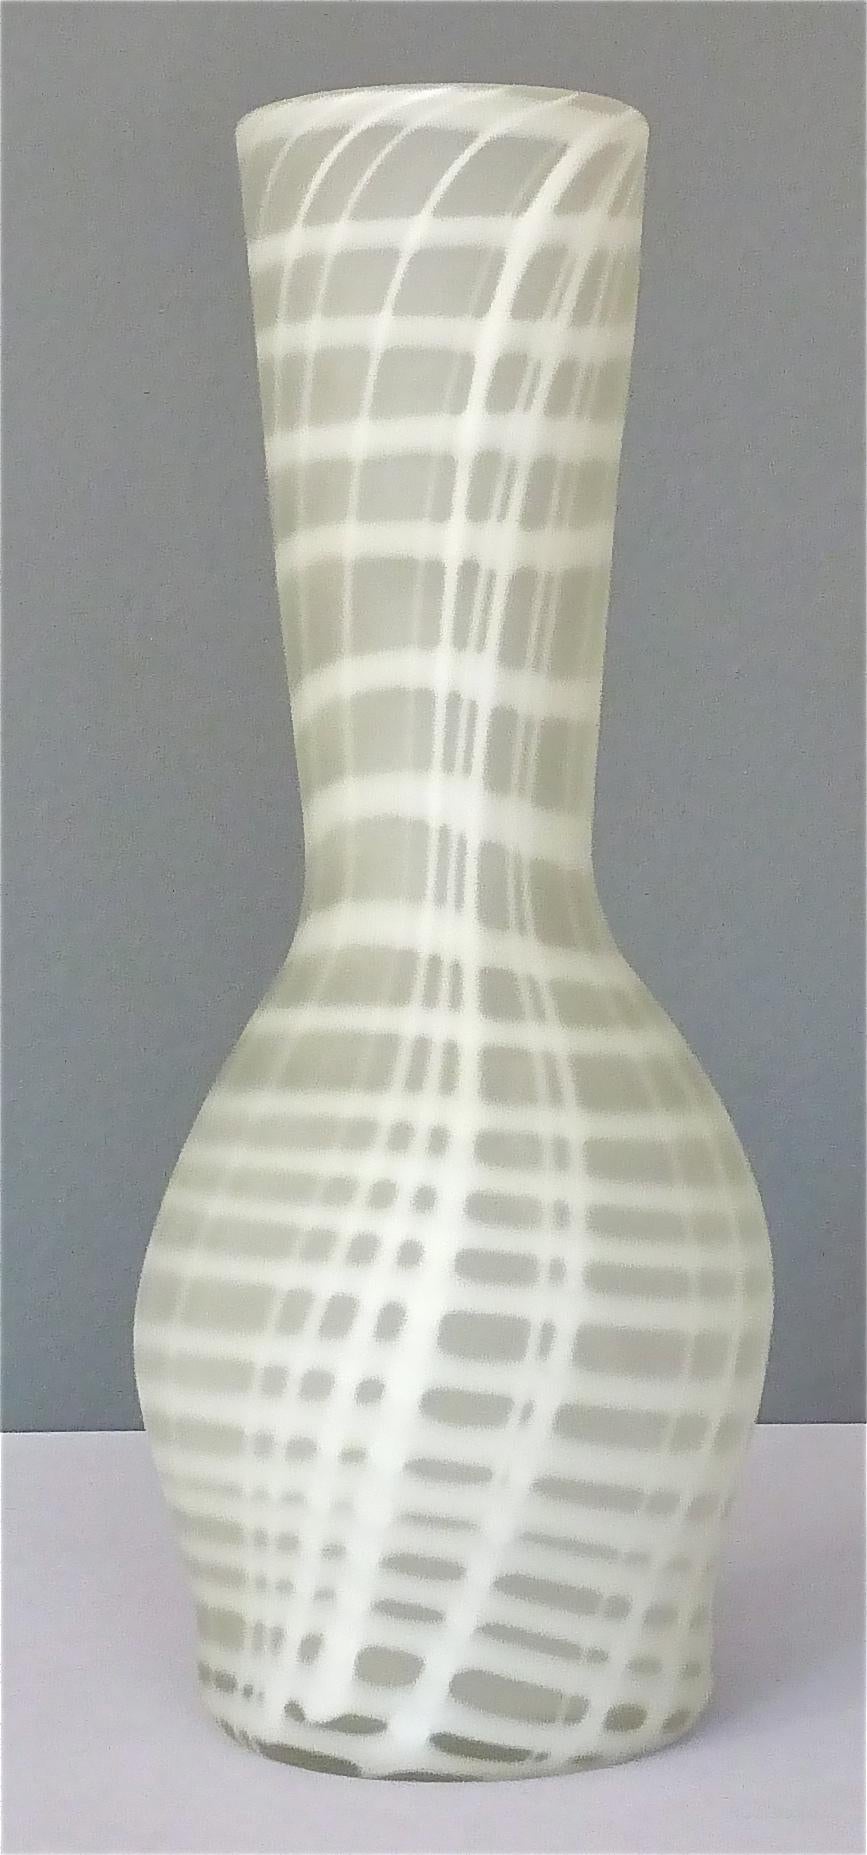 Eine große und schöne handgefertigte Vase aus Murano-Kunstglas von Maestro Giuliano Tosi, Italien, um 1970. Die Qualität der Kunstglasvase ist mit der von Venini und Barovier vergleichbar. Opak-weiße, innen zusammengesetzte vertikale und horizontale